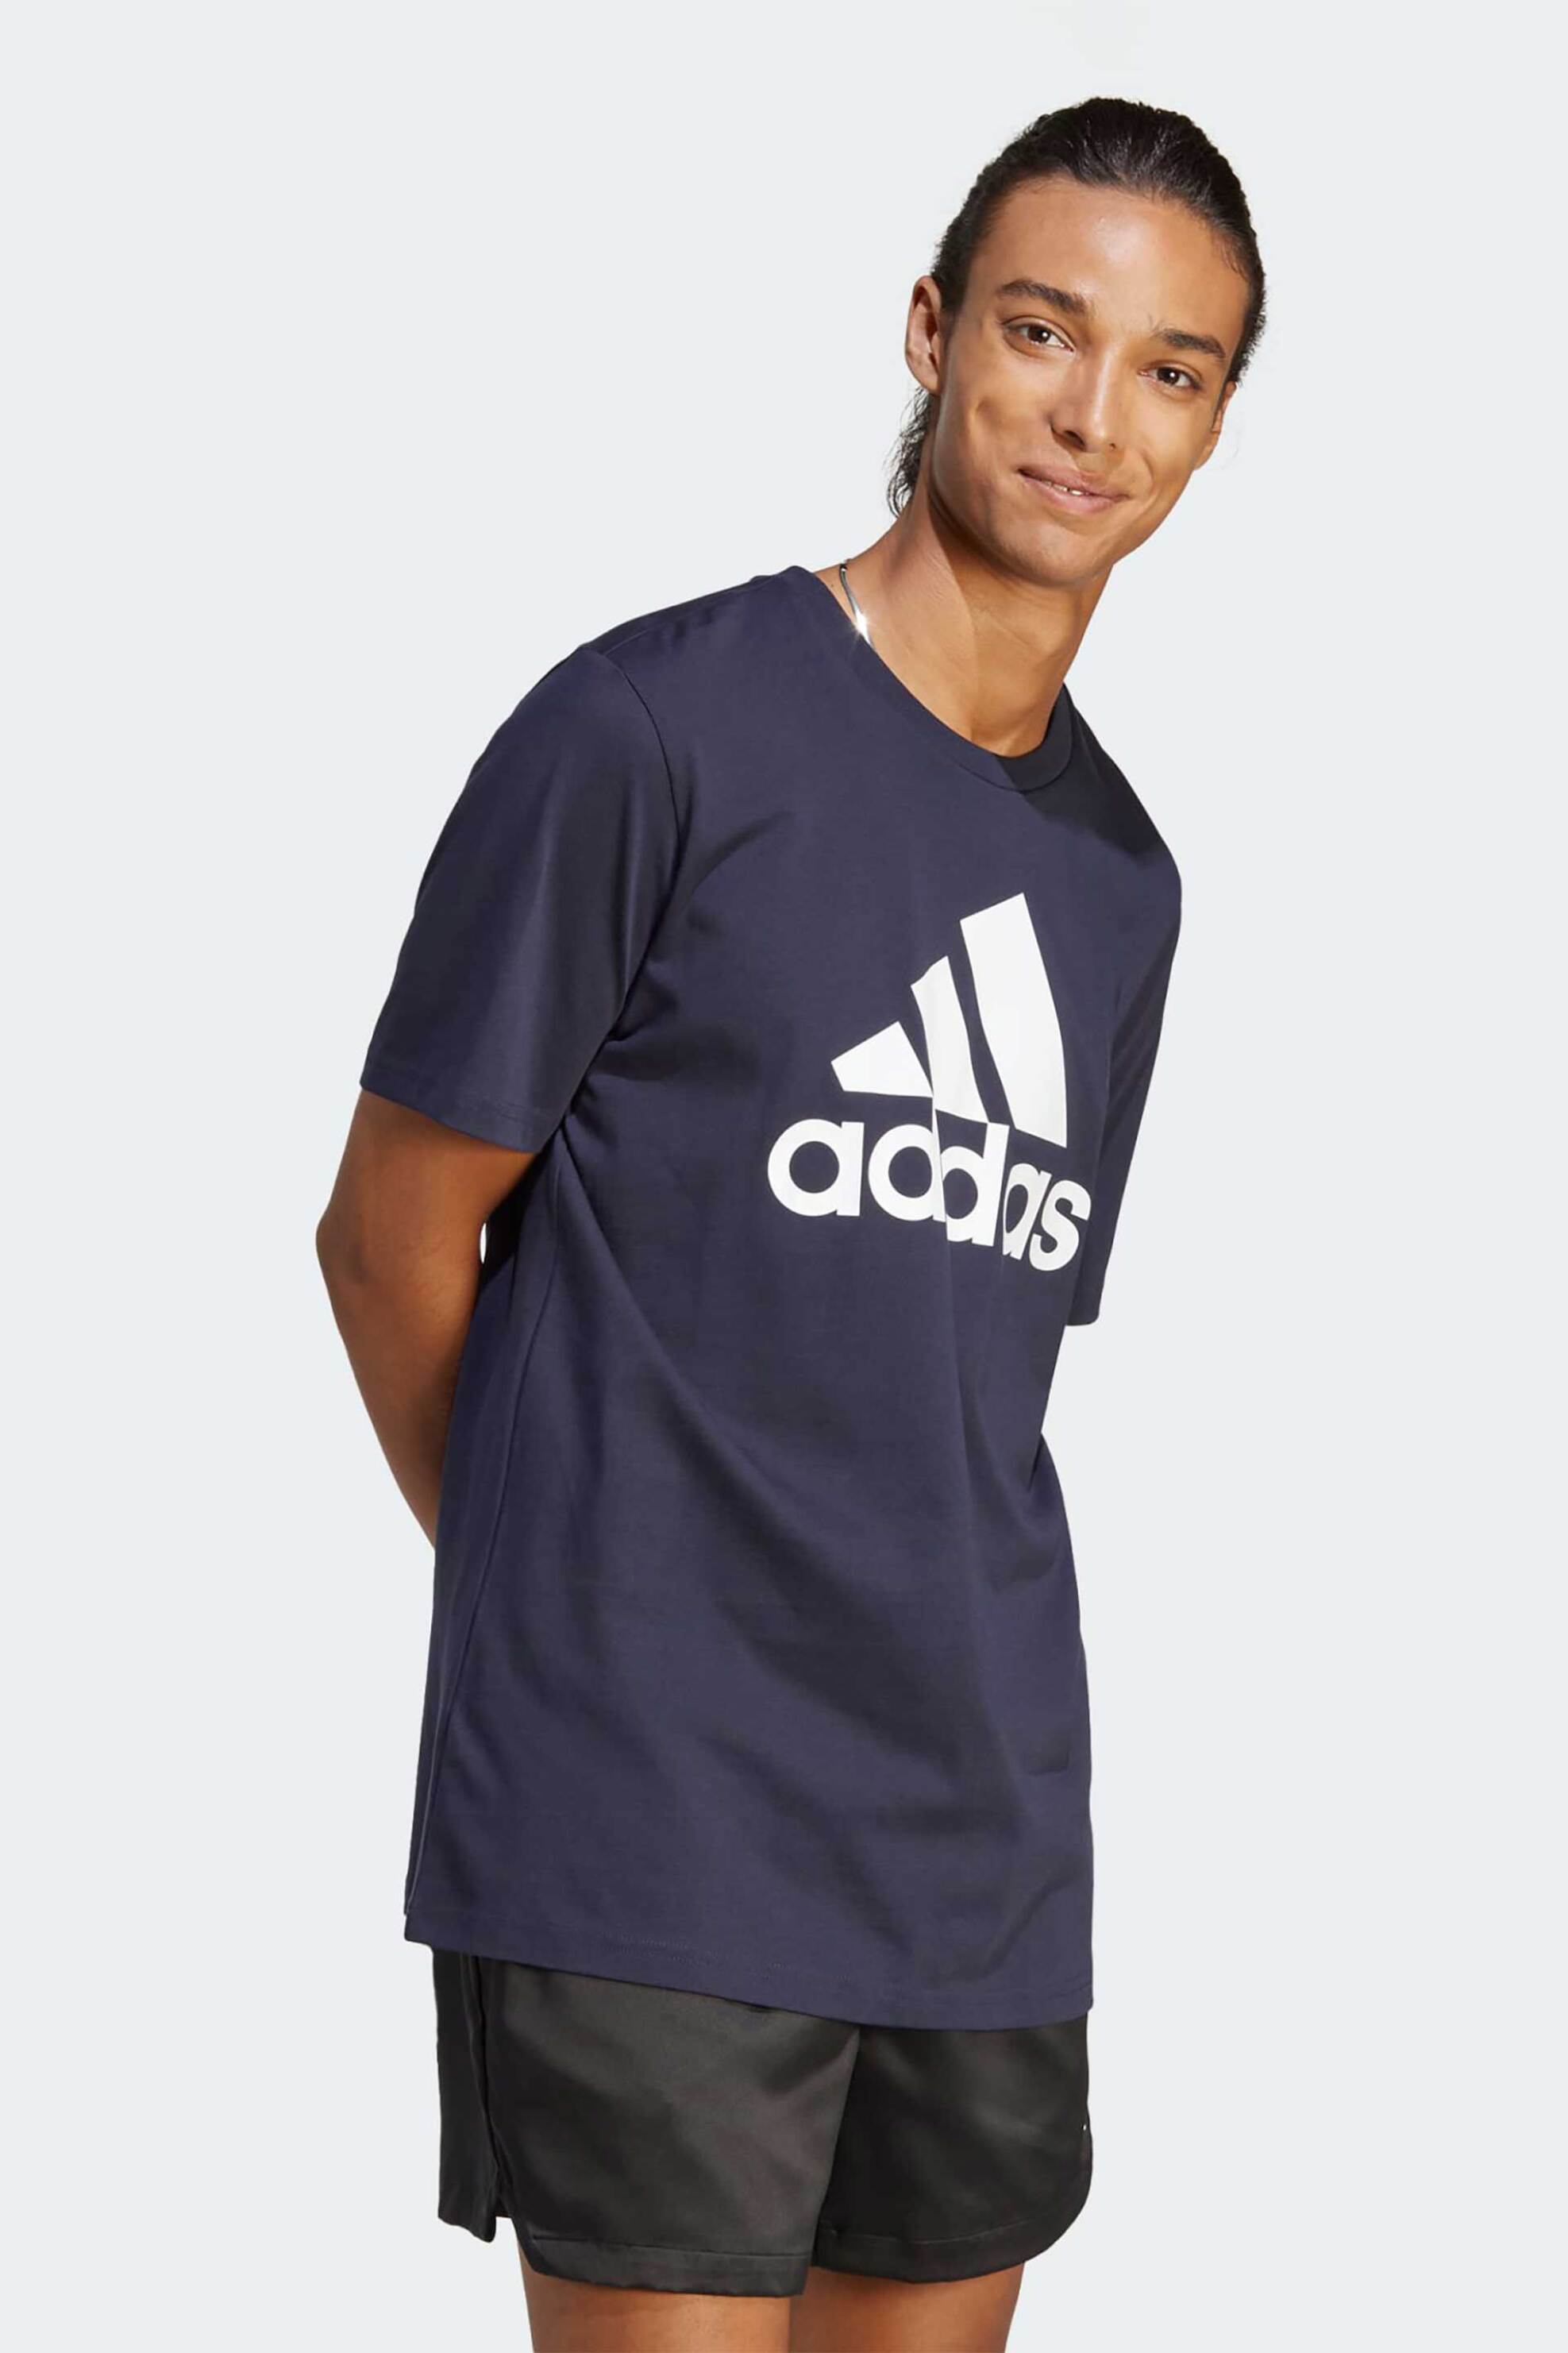 Ανδρική Μόδα > Ανδρικά Ρούχα > Ανδρικές Μπλούζες > Ανδρικά T-Shirts Adidas ανδρικό αθλητικό βαμβακερό T-shirt "Essentials Single Jersey Big Logo" - IC9348 Σκούρο Μπλε